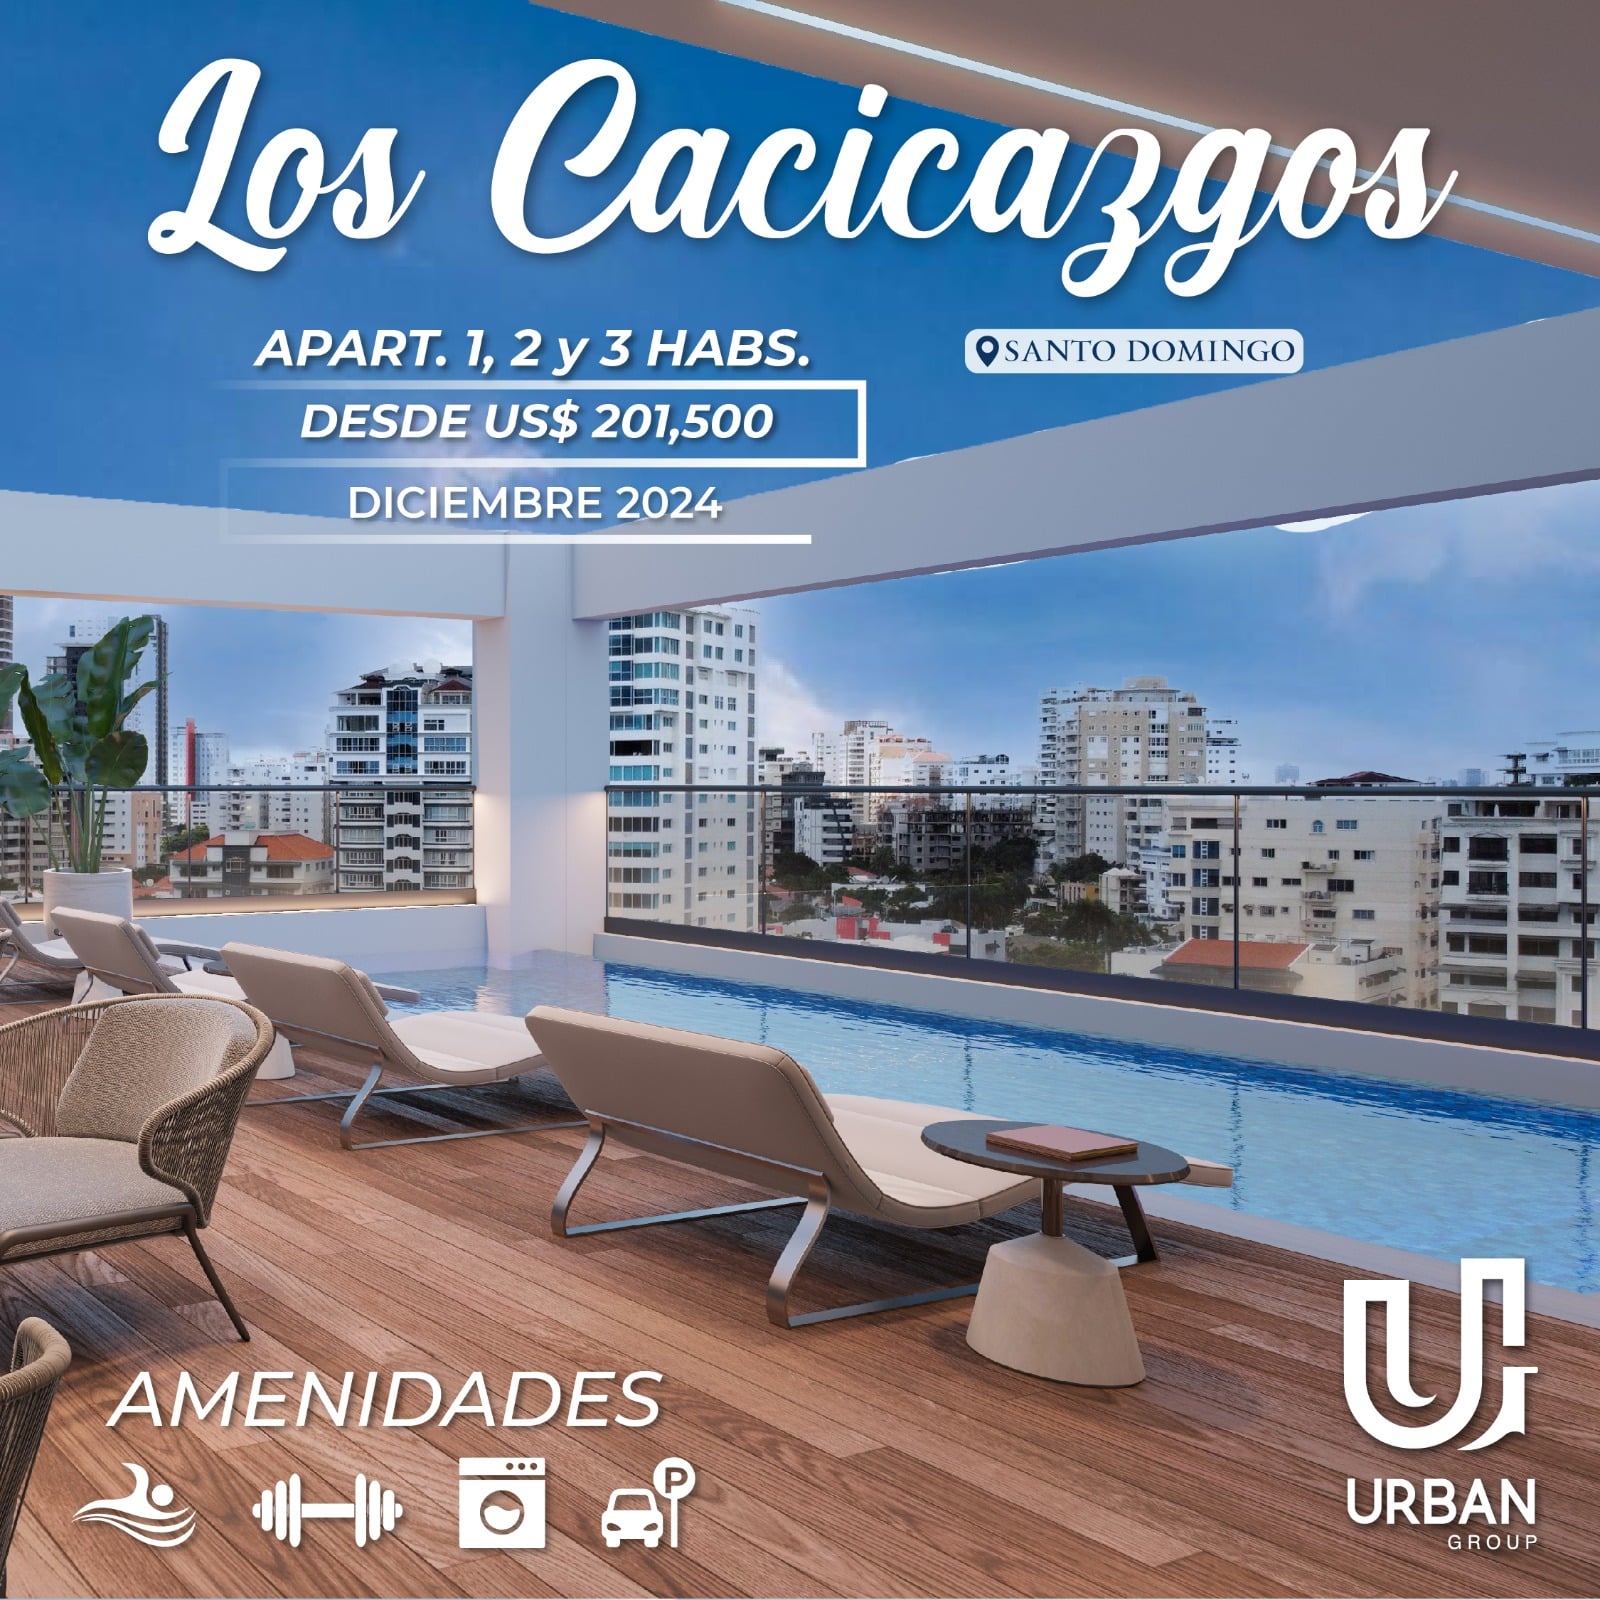 Apartamentos de Lujo en Los Cacicazgos desde US$201,500